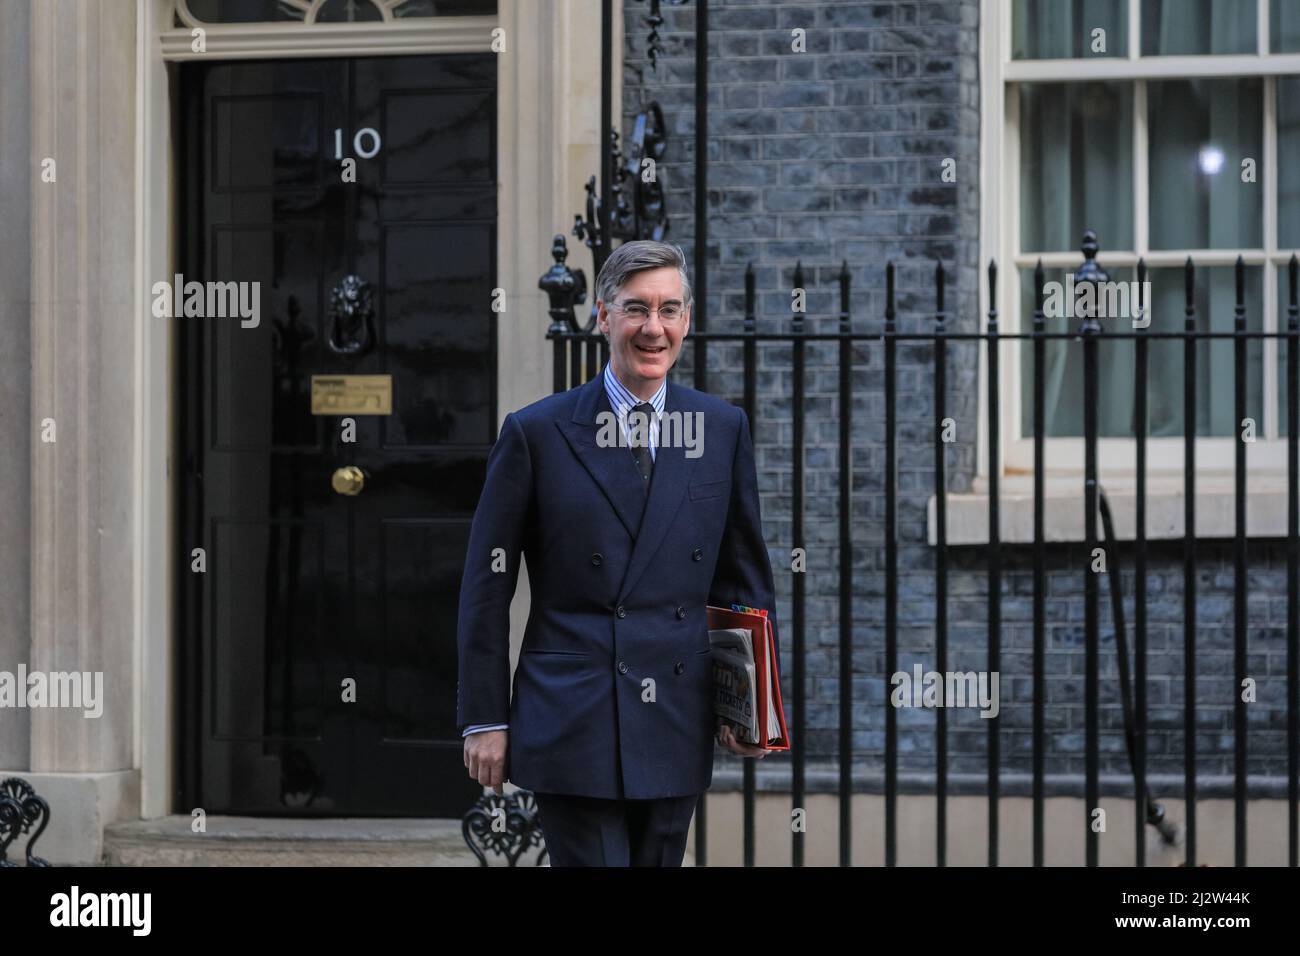 Der Abgeordnete Jacob Rees-Mogg, Lord President of the Council, Vorsitzender des Unterhauses, verlässt die Downing Street 10, London, Großbritannien Stockfoto